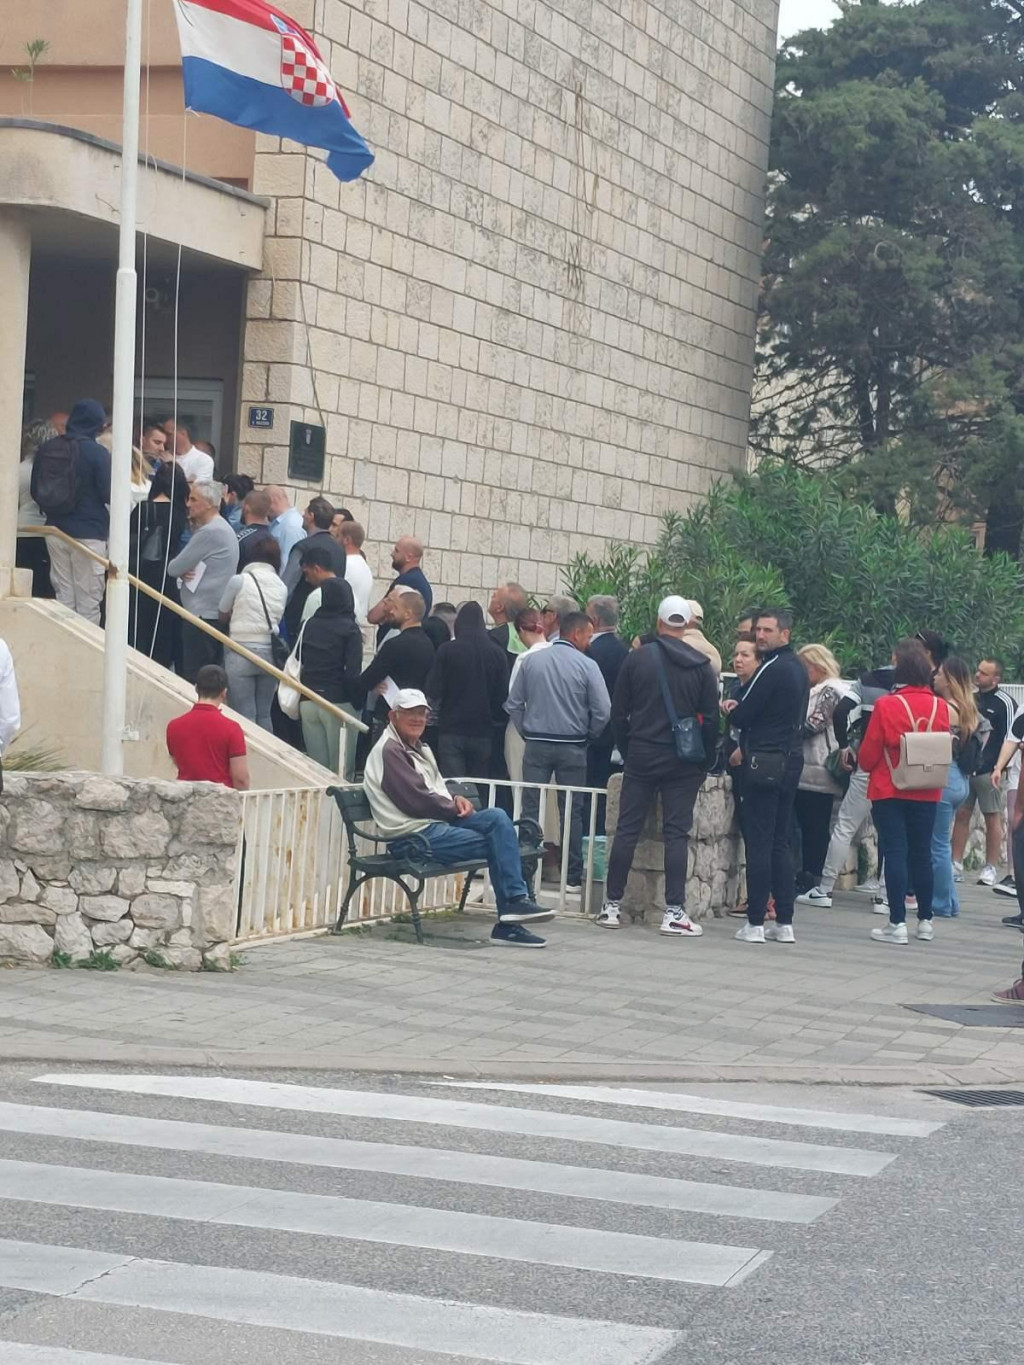 &lt;p&gt;Ispred zgrade policije na Ilijinoj glavici mnogi čekaju zbog radnih dozvola&lt;/p&gt;